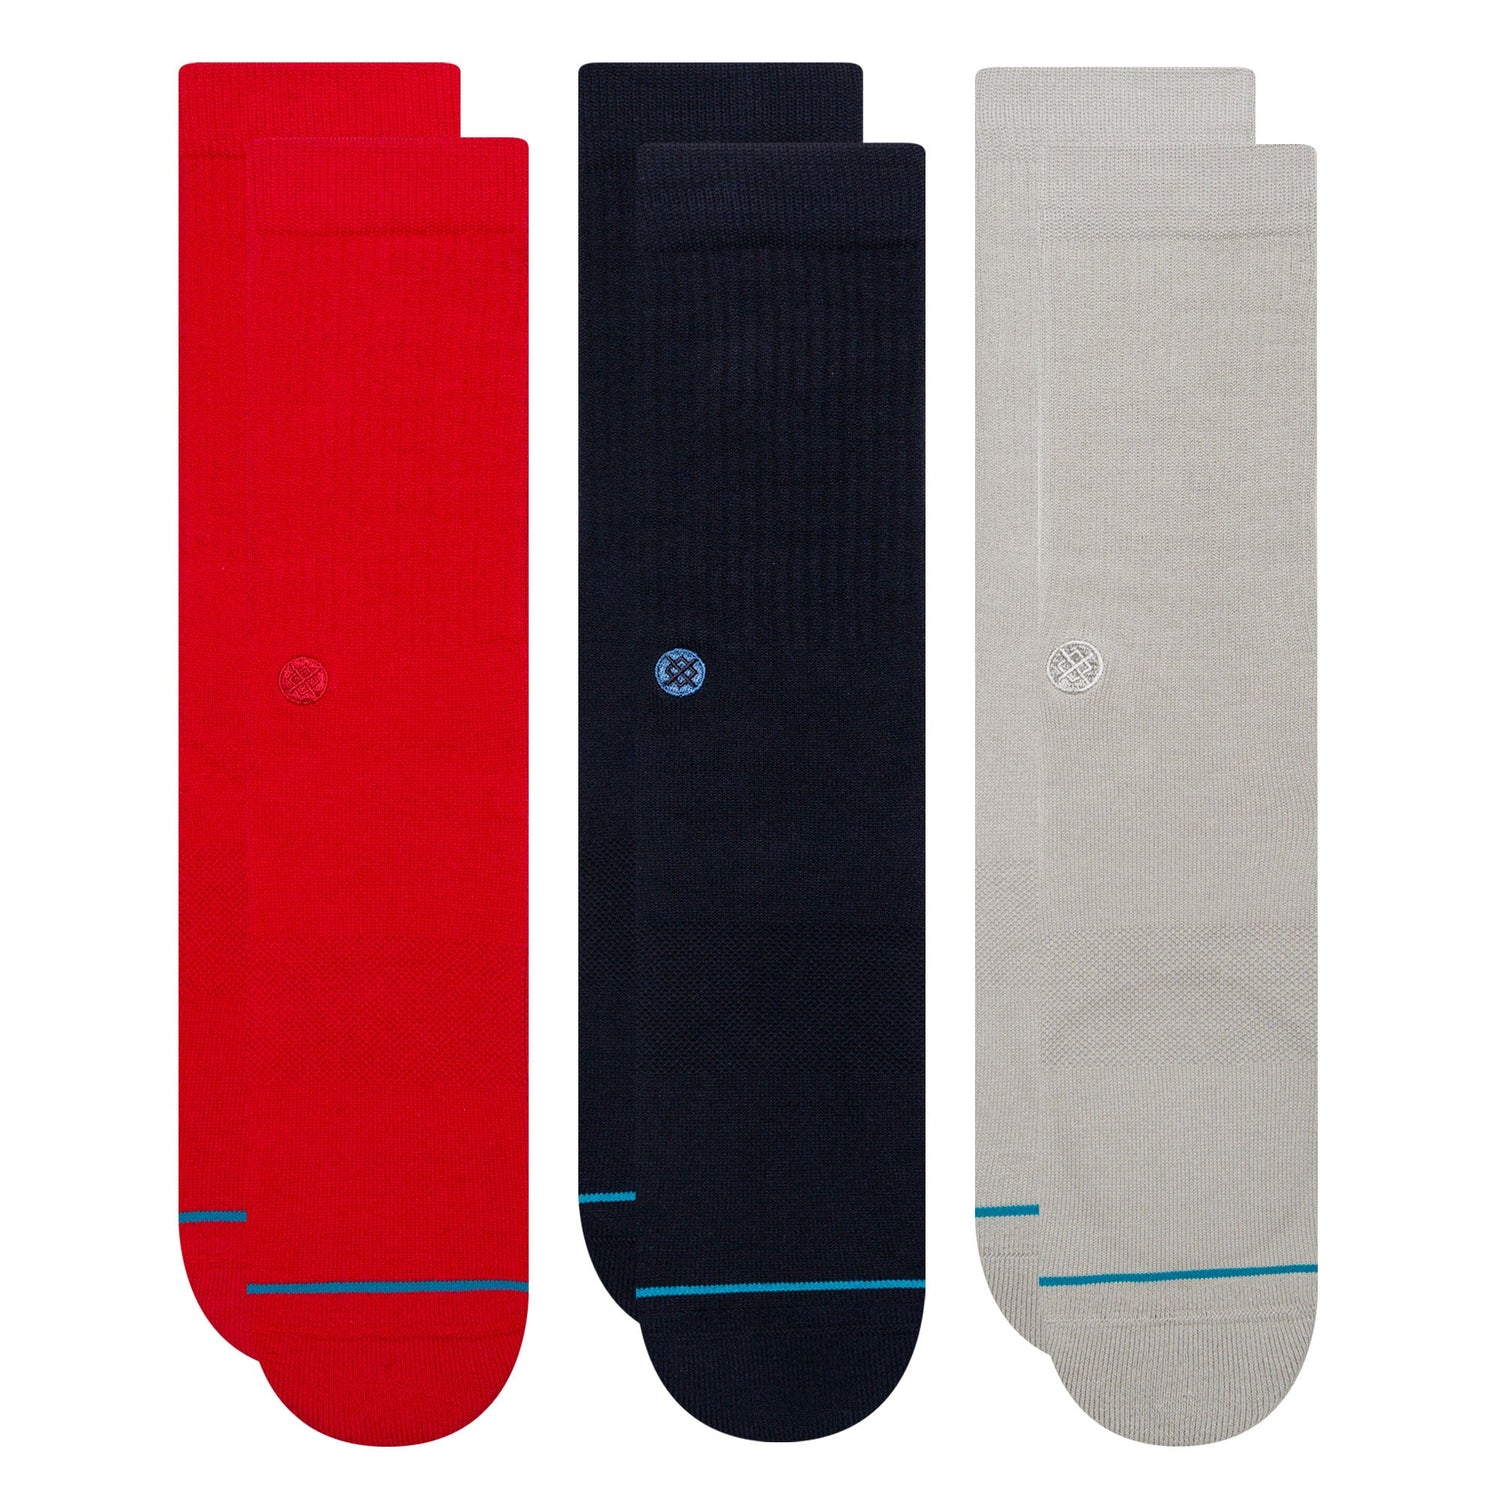 Lot de 3 paires de chaussettes mi-mollet rouges bleu marine grises Icon de Stance